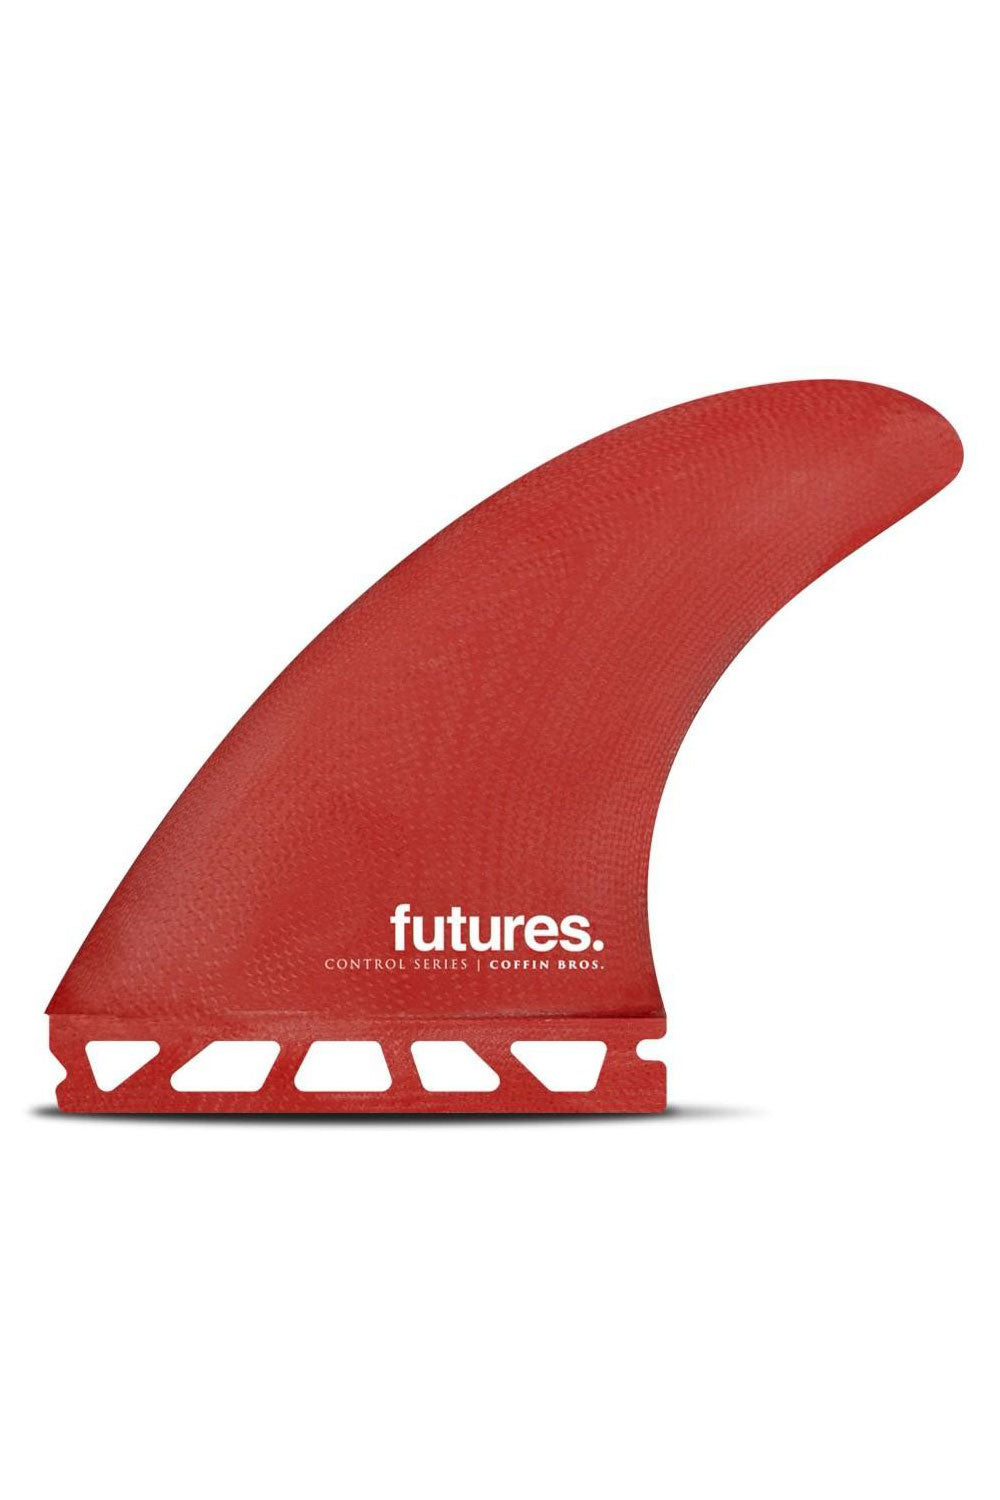 Futures Fins Coffin Bros Medium Fibreglass Thruster Set